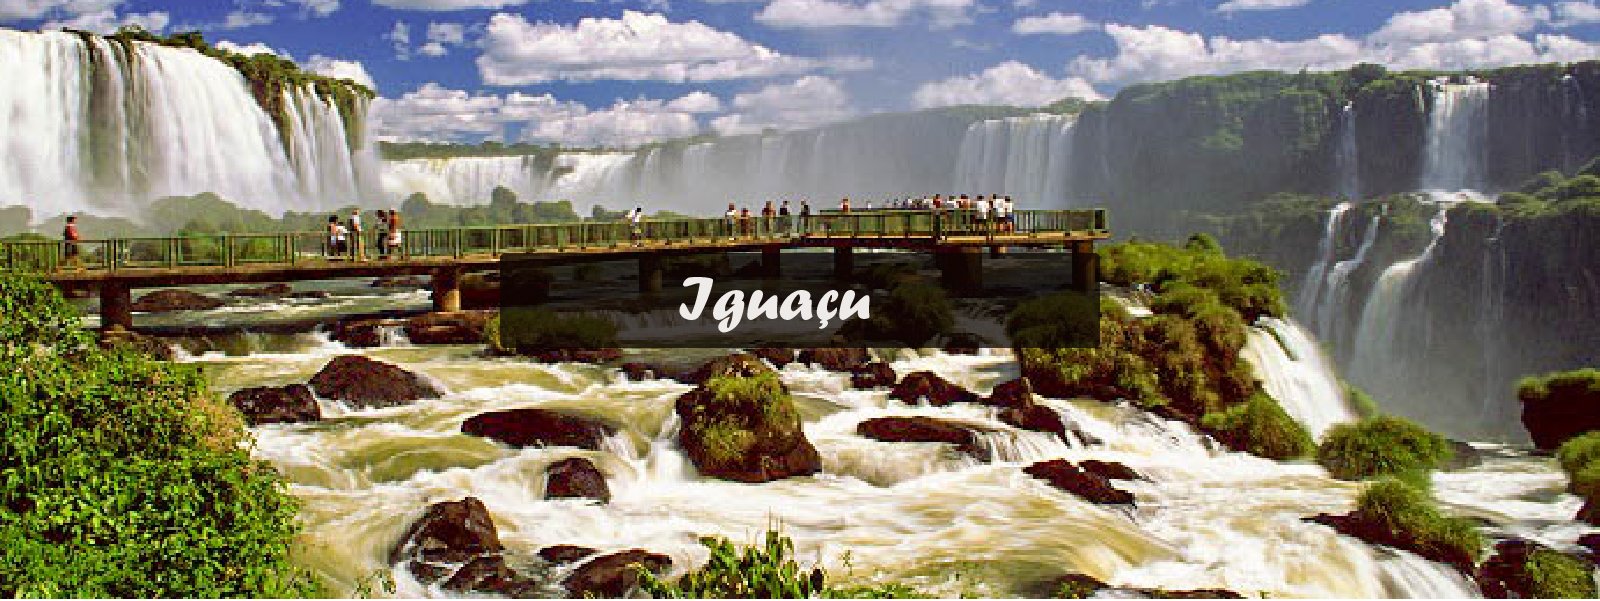 Foz Iguaçu